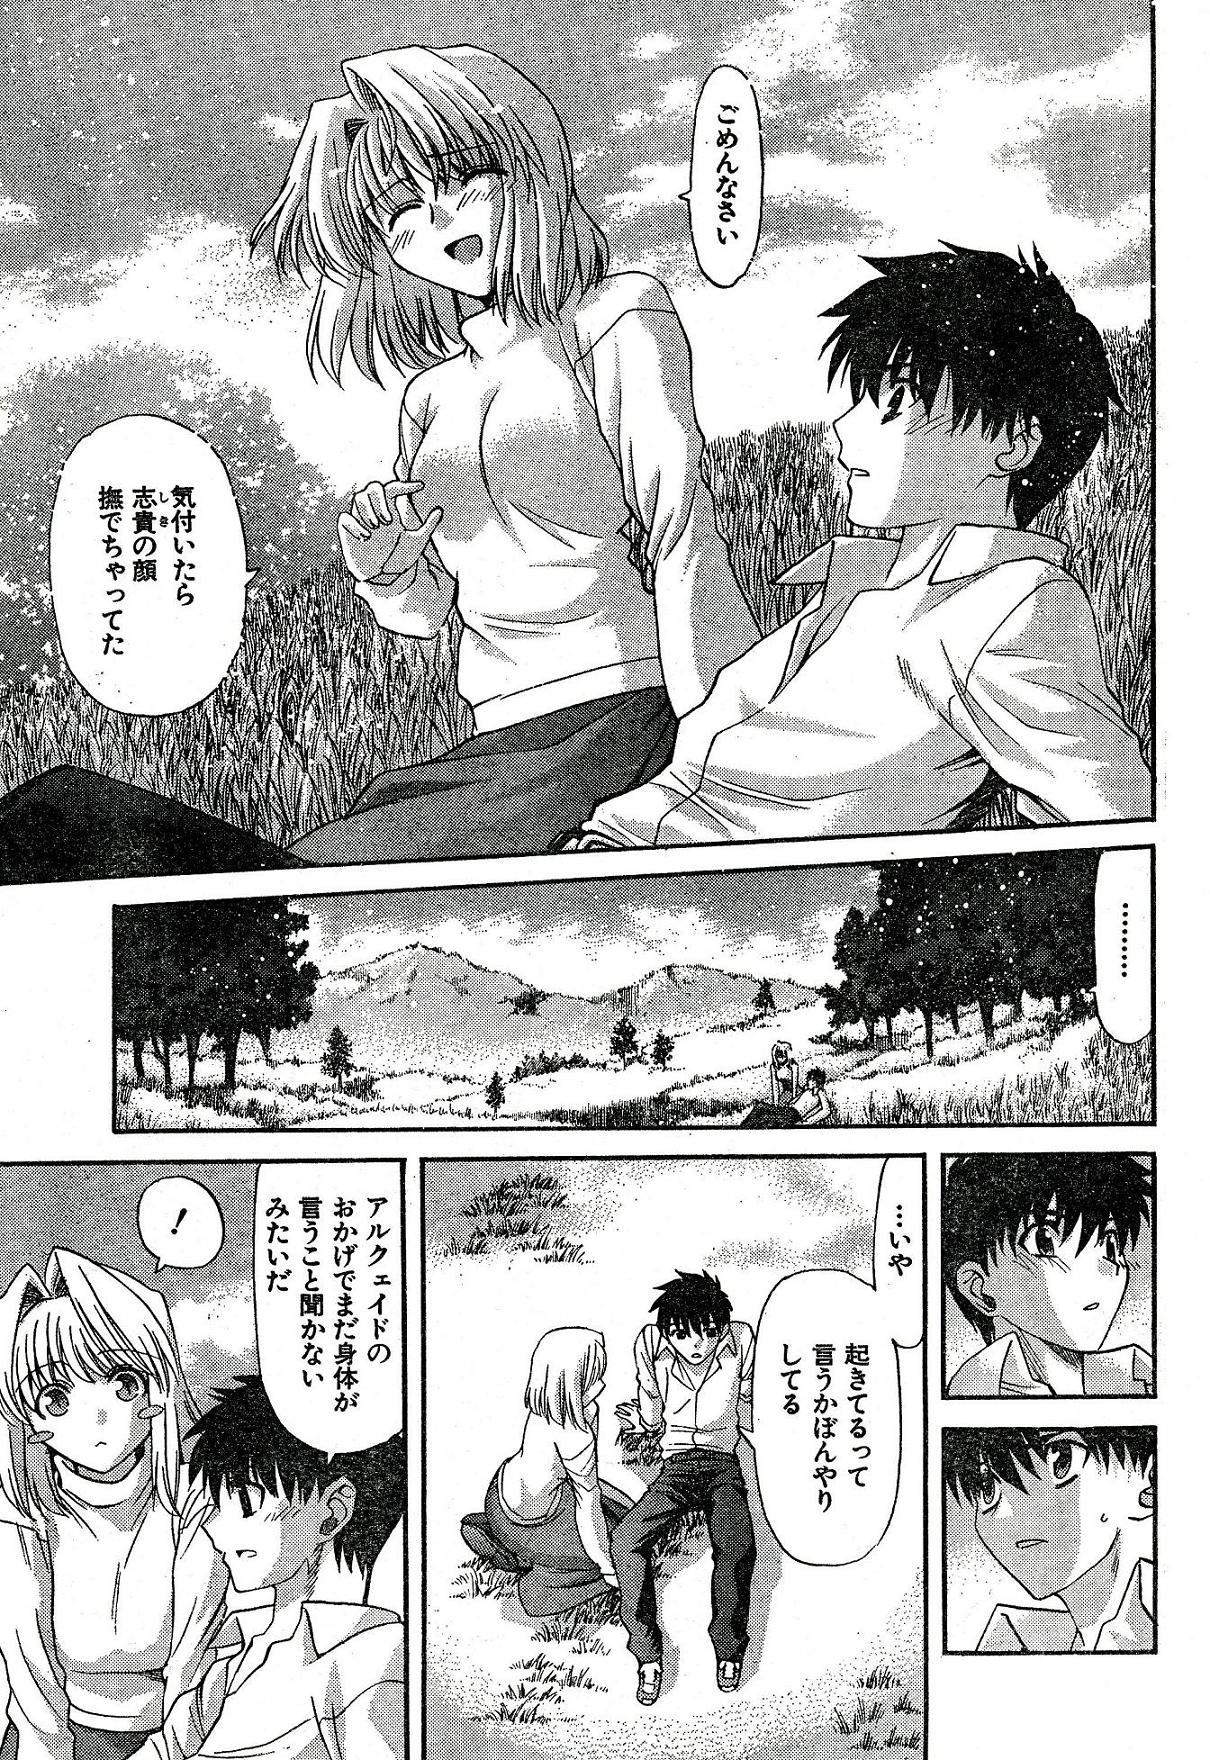 Shingetsutan Tsukihime ch.59 page 7 full